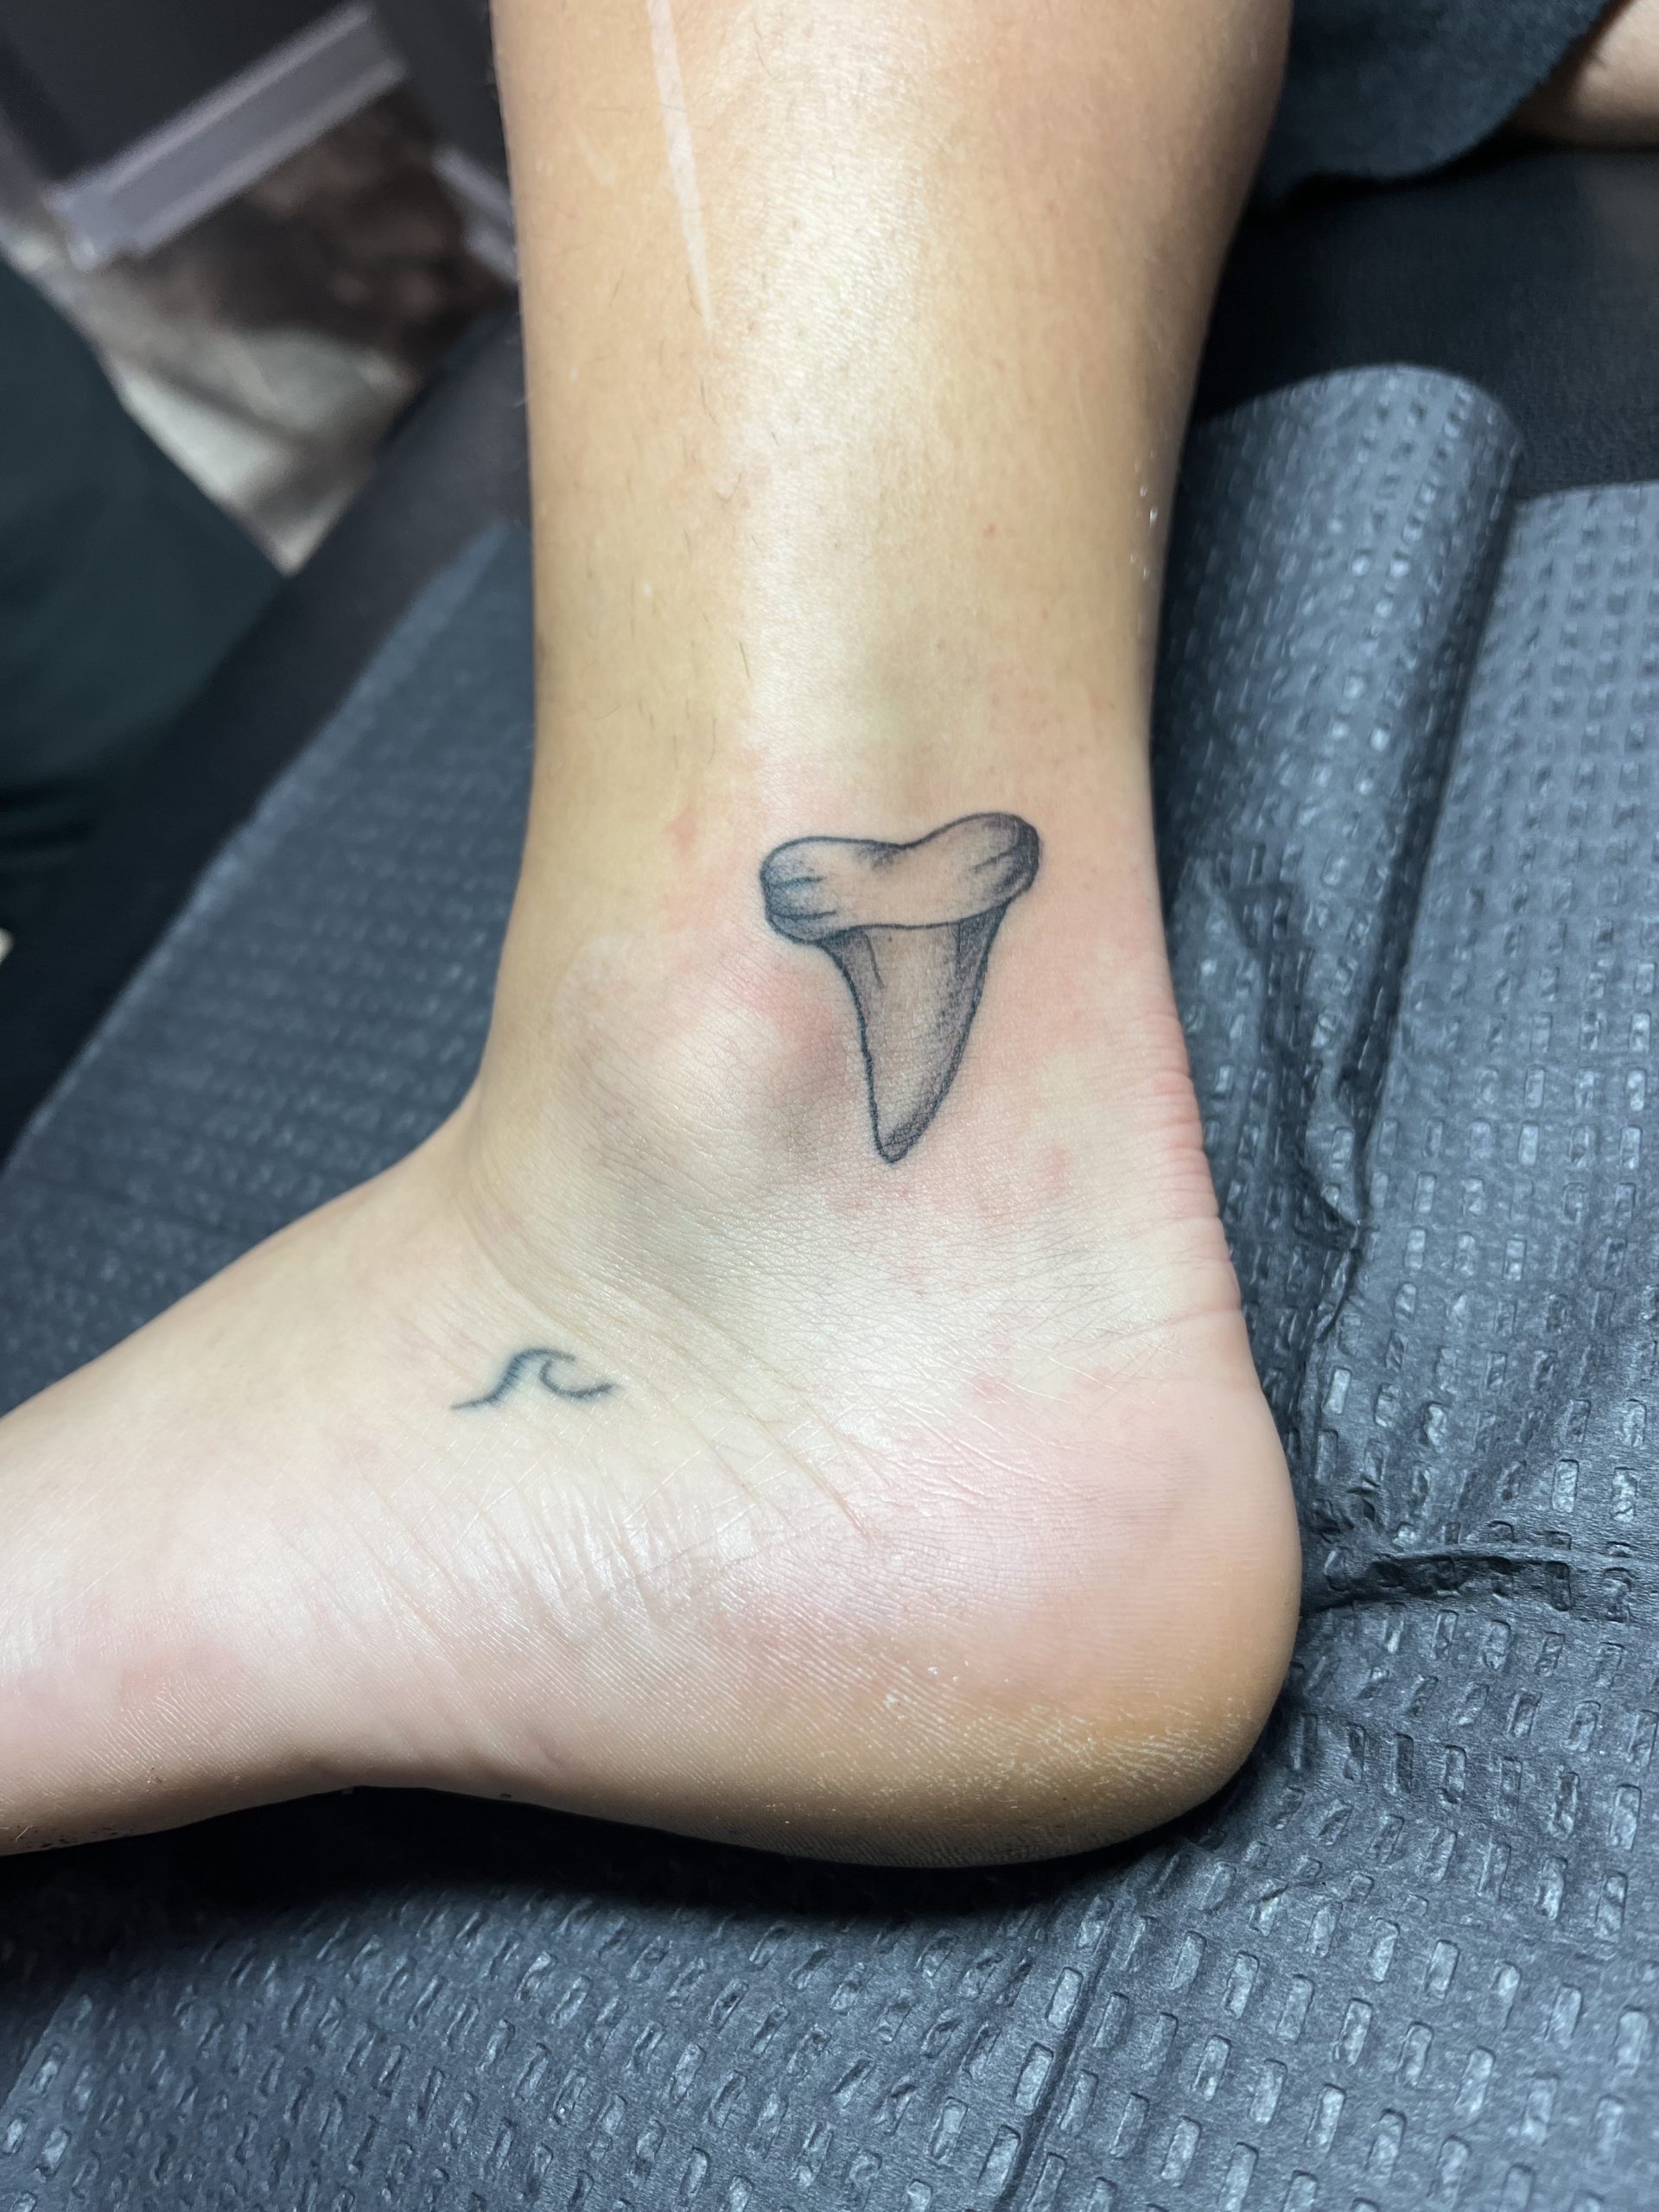 Teeth Tattoos | News | Dentagama